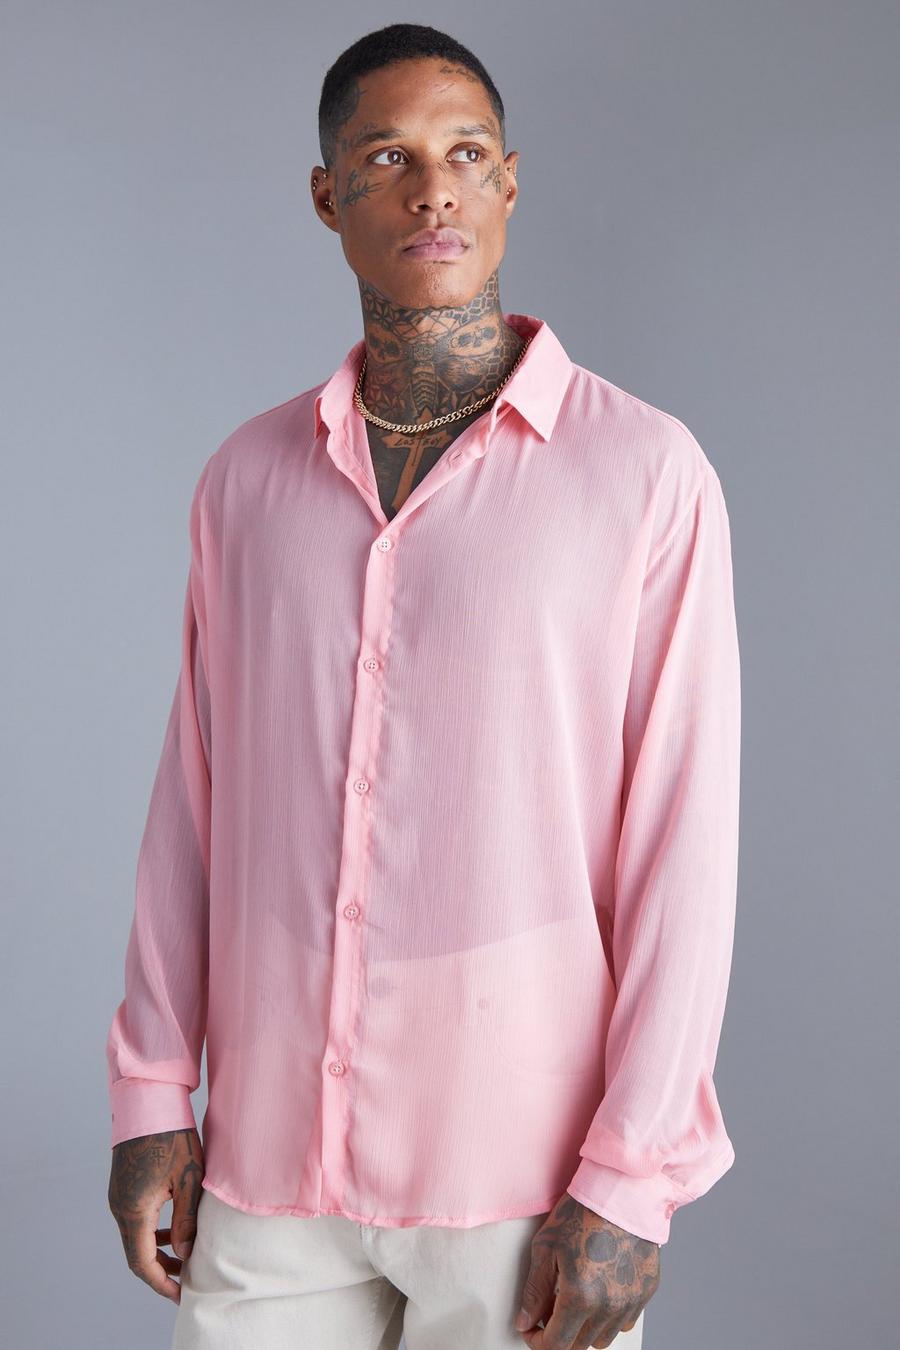 ורוד rosa חולצת שיפון אוברסייז עם הדפס משבצות ושרוולים ארוכים 